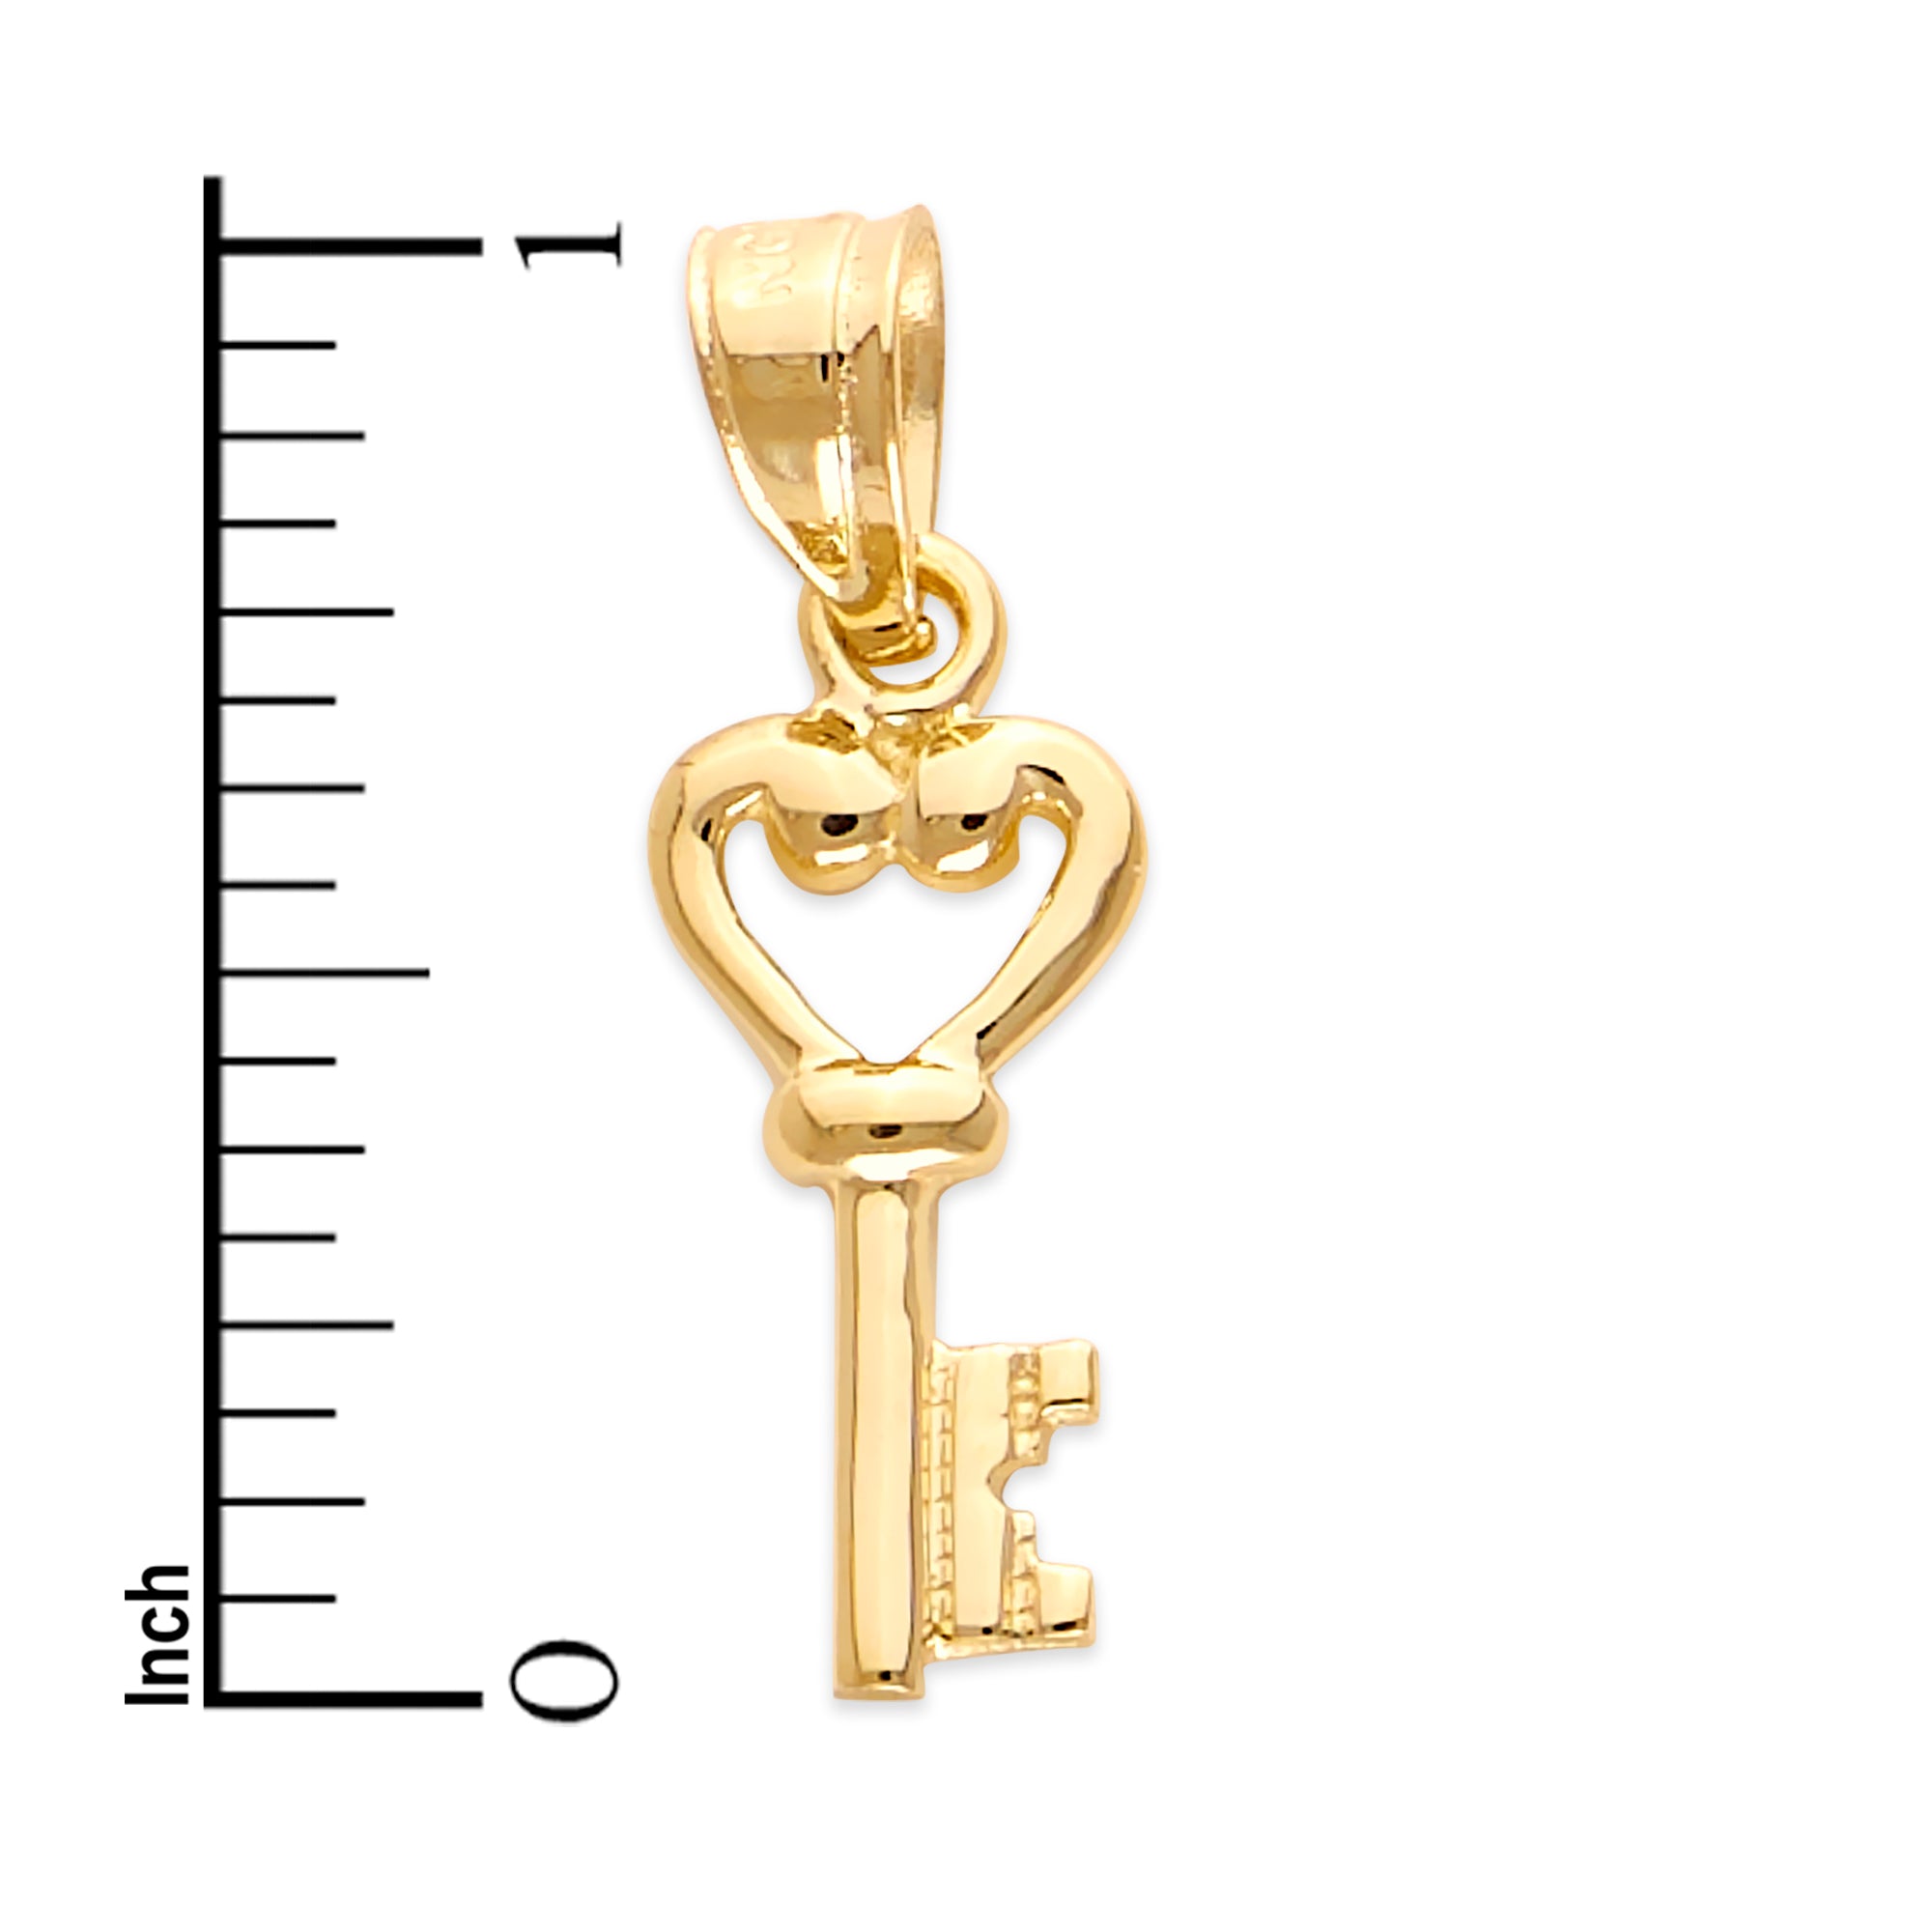 Solid Gold Key Pendant - 10k or 14k